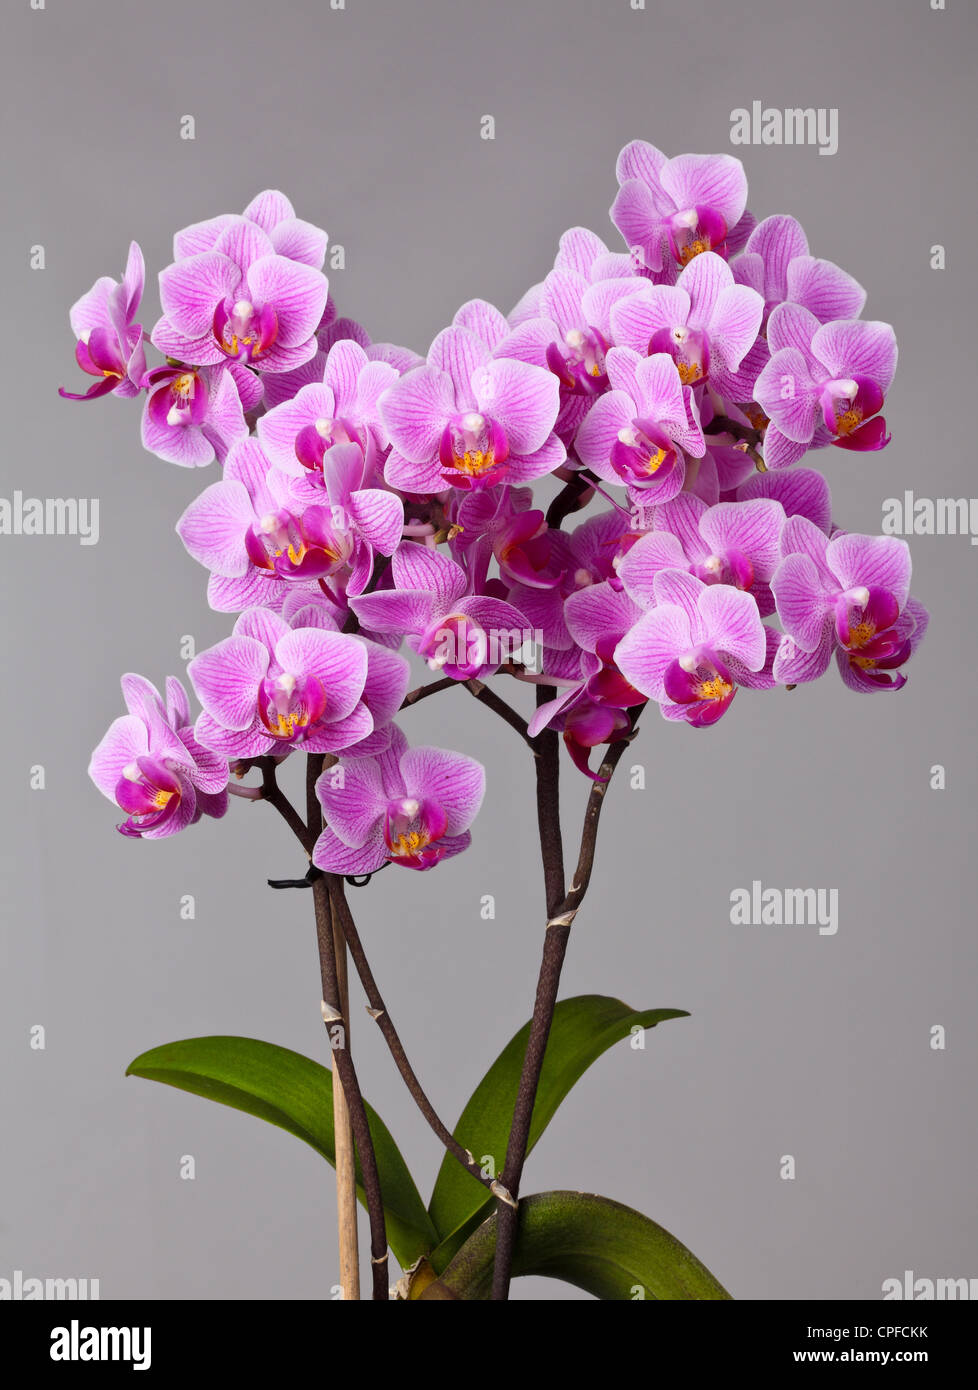 Primo piano immagine di orchidea su sfondo grigio Foto Stock